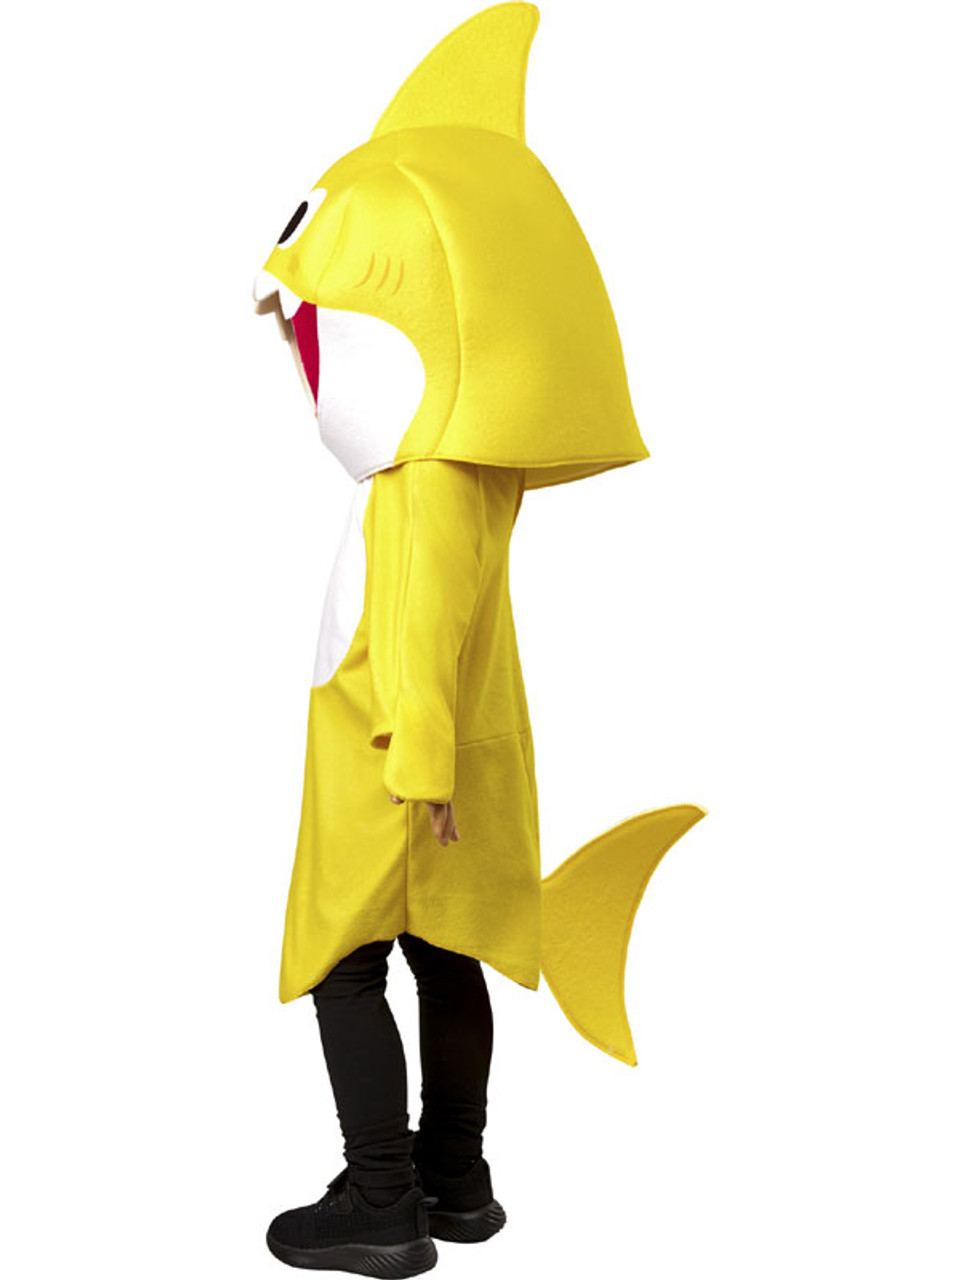 Baby Shark Costume Inset 2